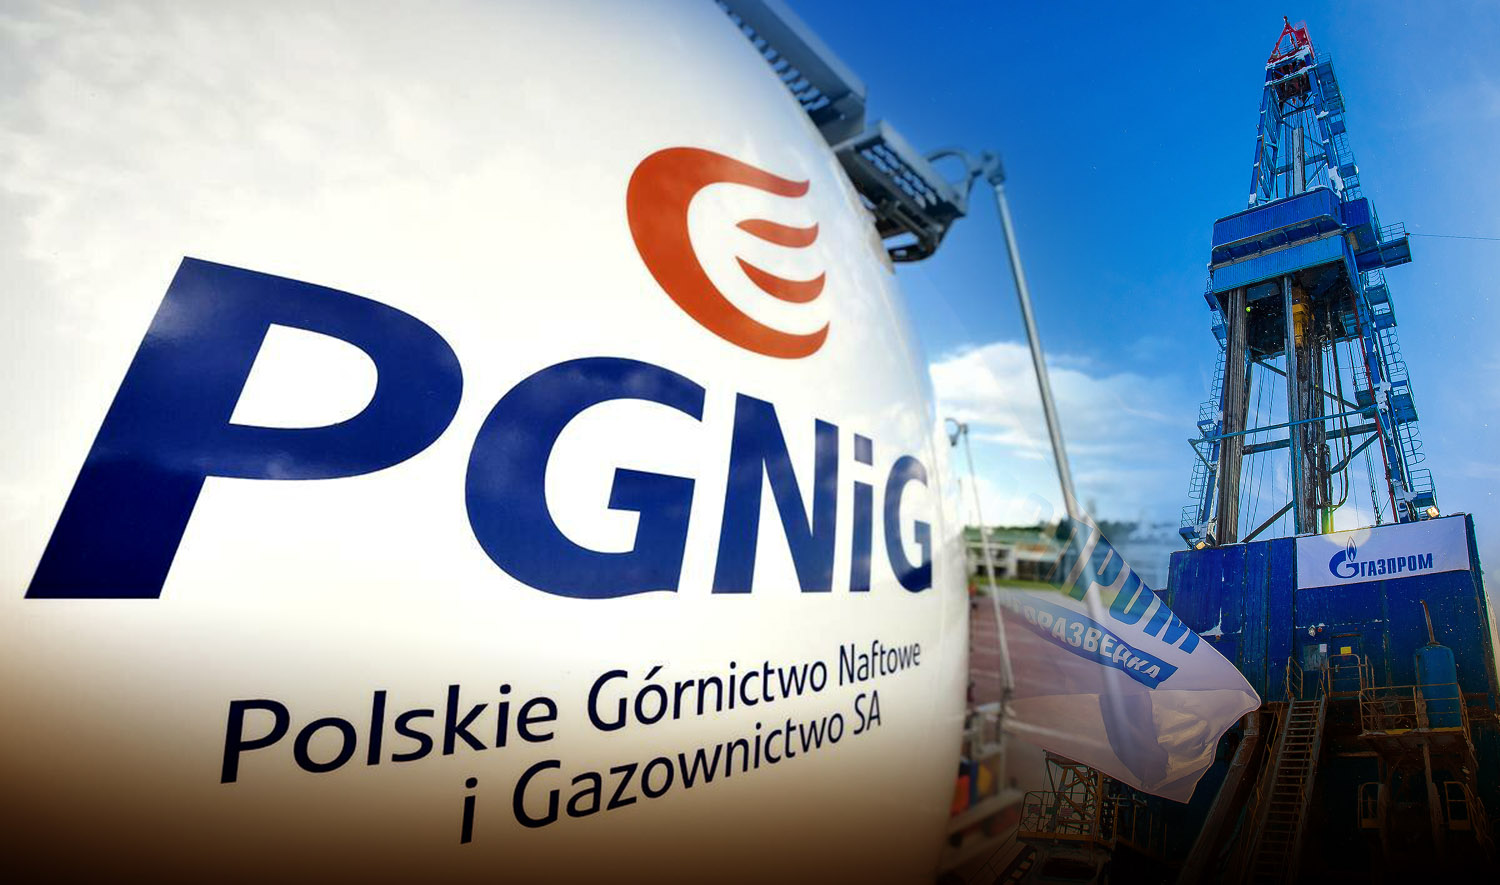 В России припомнили Польше ее политику после просьбы снизить цены на газ